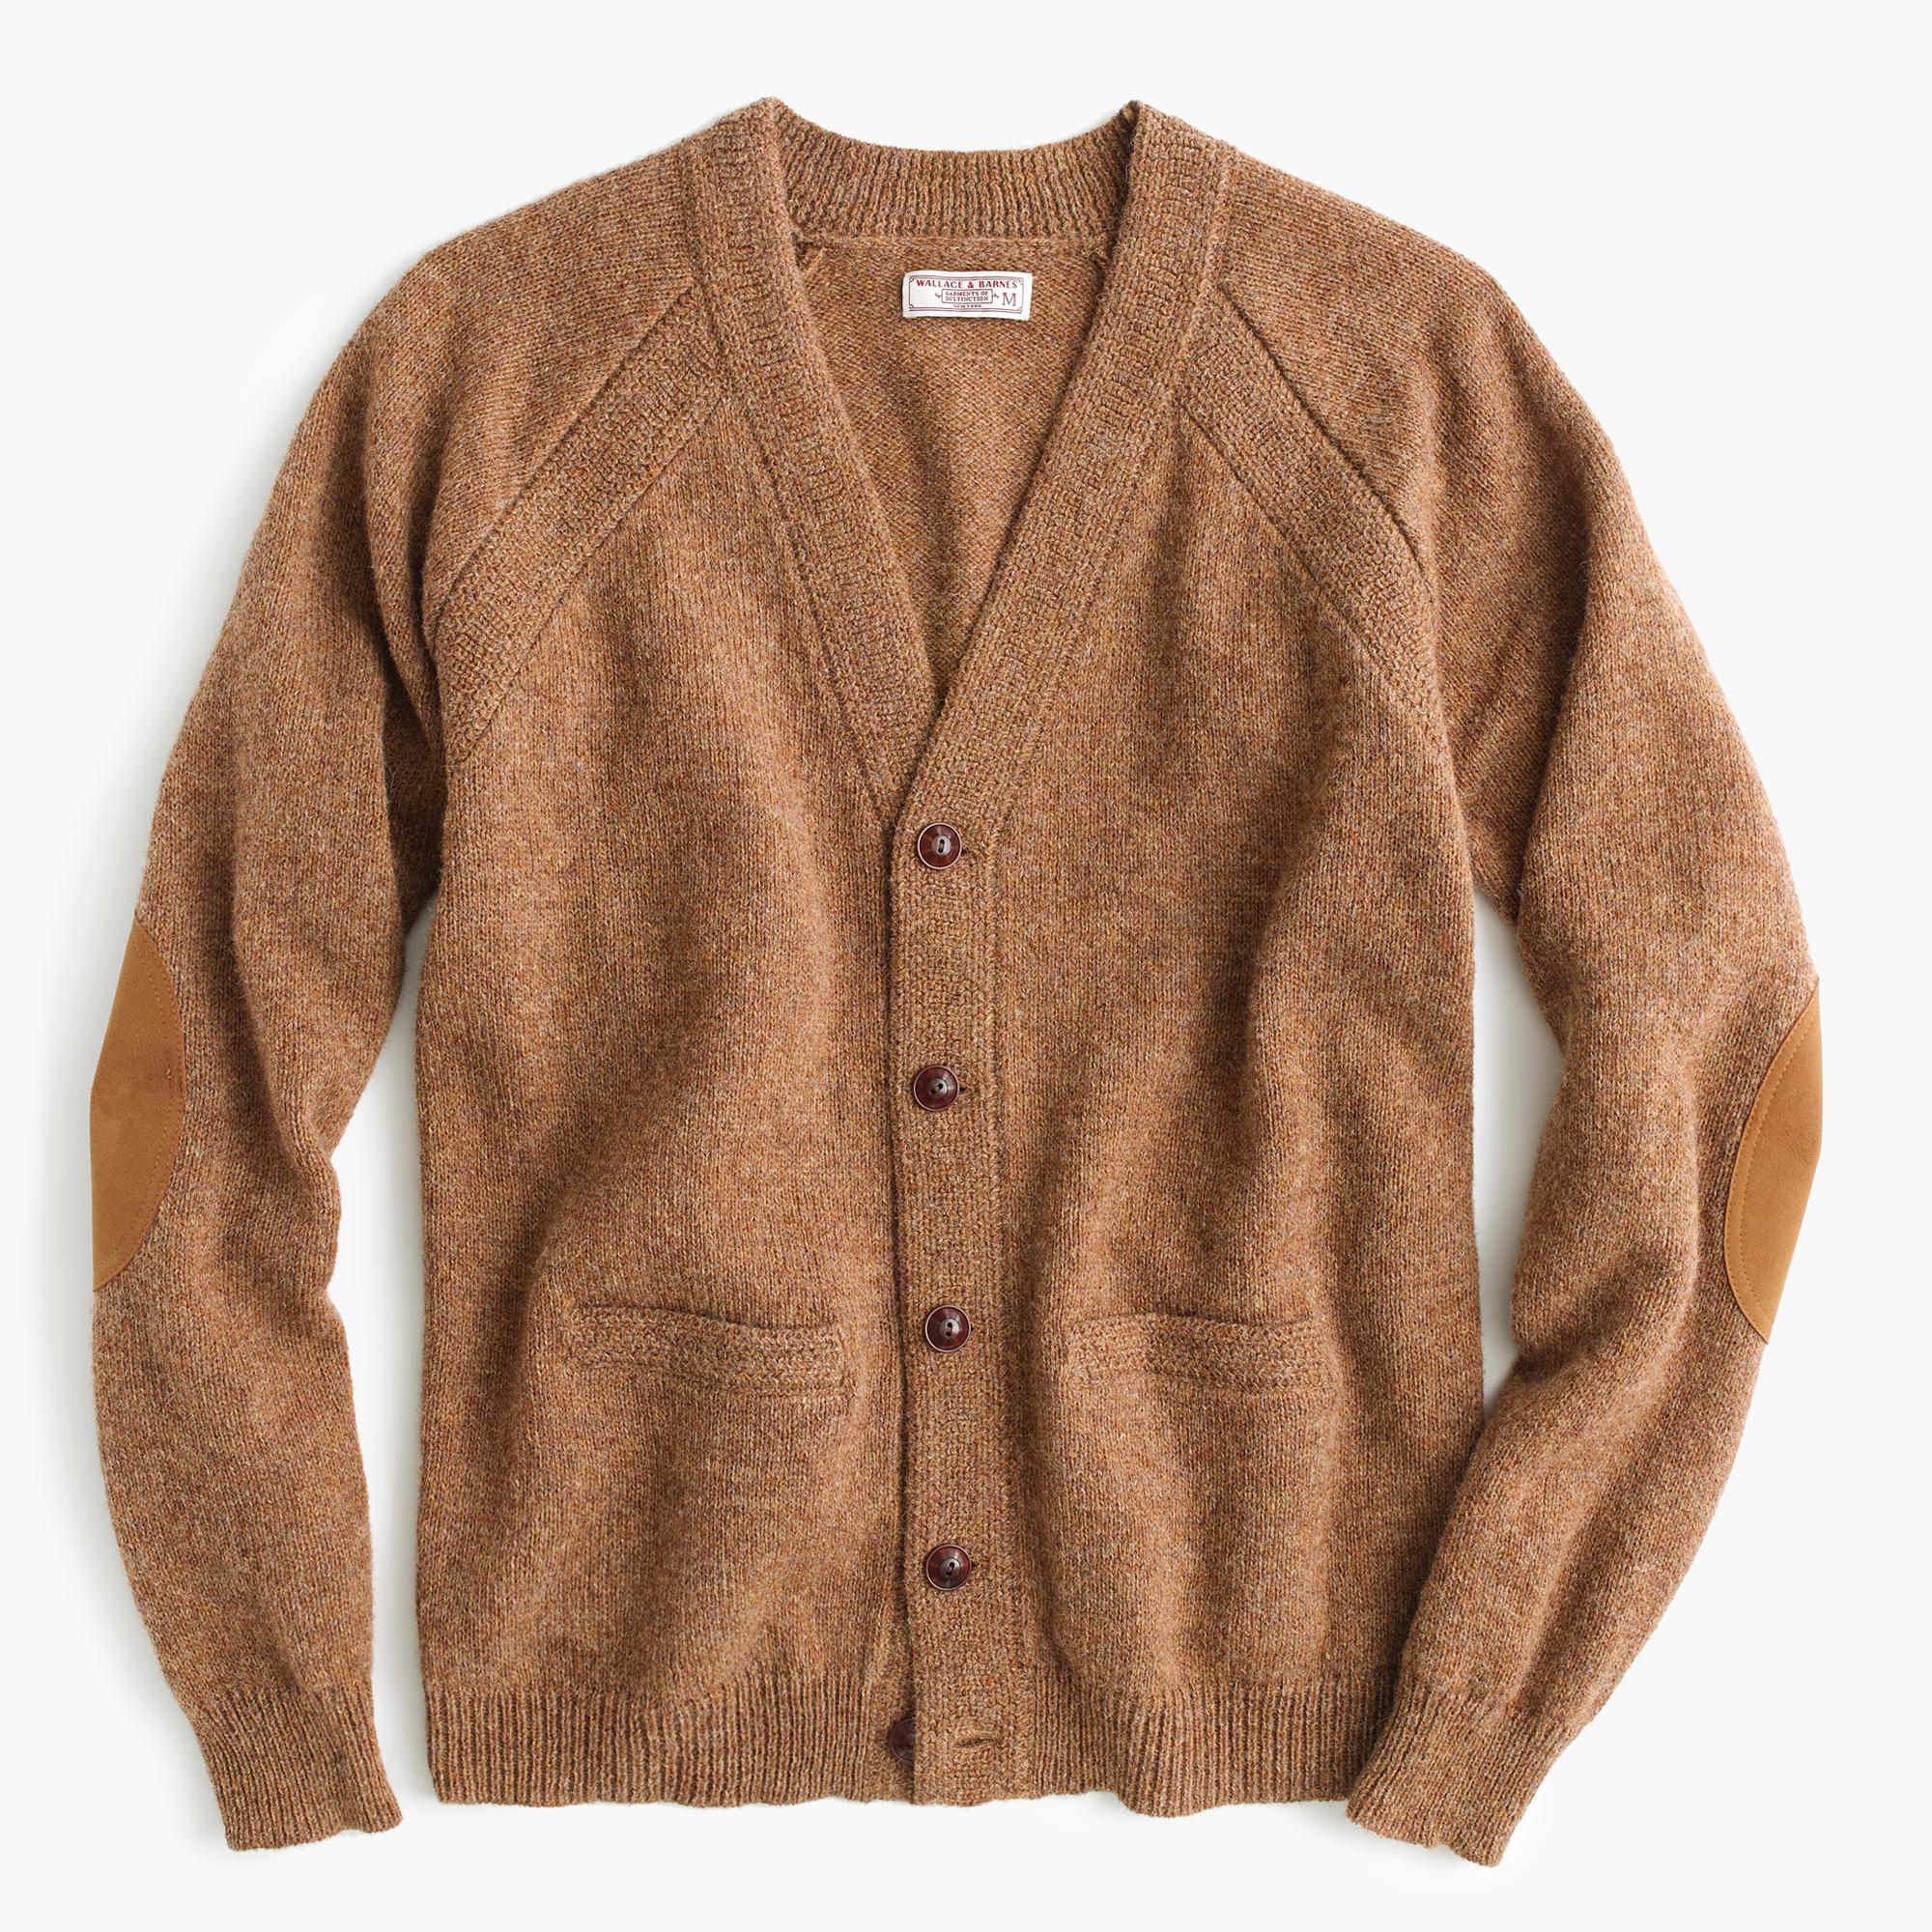 J.Crew Wallace & Barnes English Shetland Wool Cardigan Sweater in